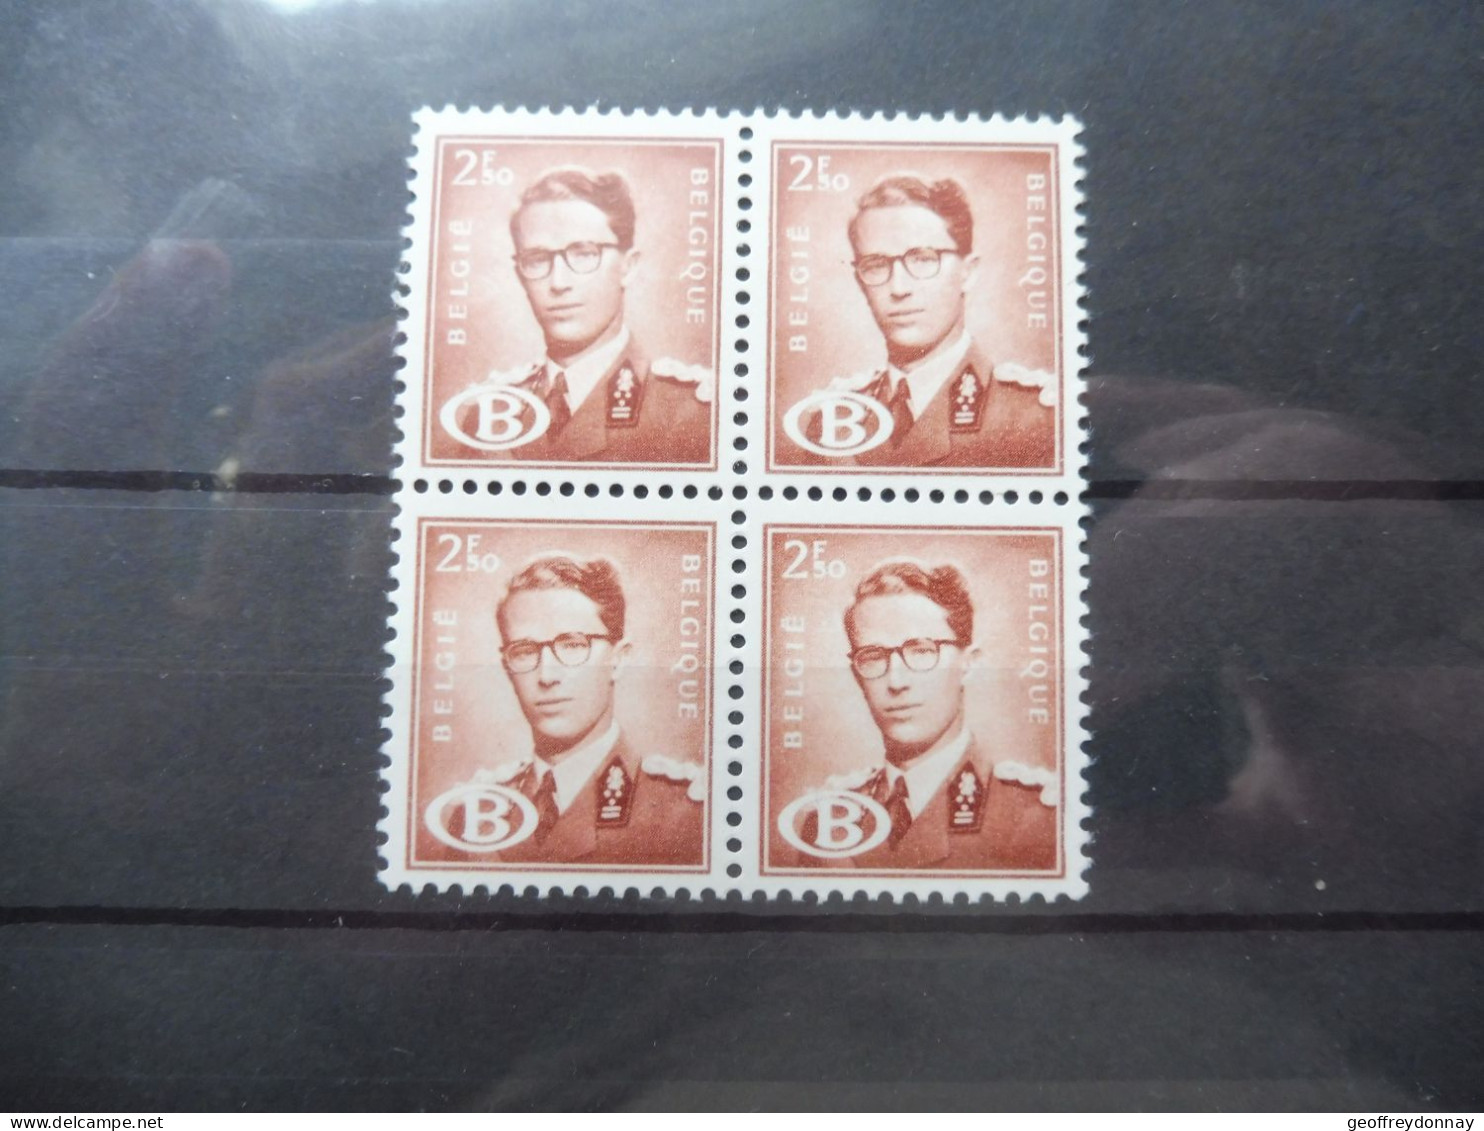 Belgique Belgie Dienstzegels Service Bl Bloc Blok De 4 S S 60 Baudouin Boudewijn Neuf Luxe Mnh ** 1954 - Postfris